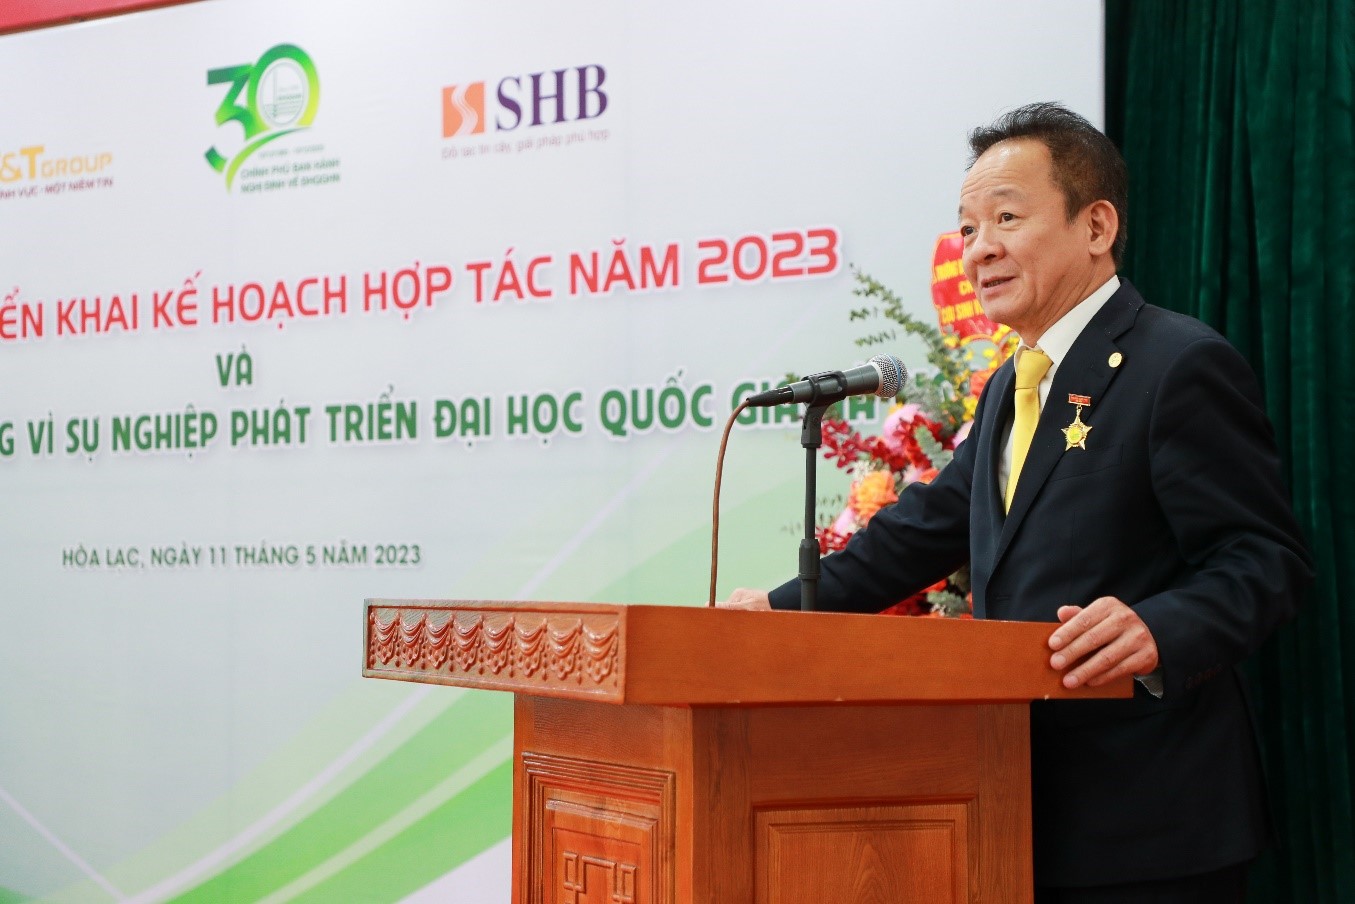 Kinh tế - Doanh nhân Đỗ Quang Hiển nhận kỷ niệm chương vì sự nghiệp phát triển Đại học Quốc gia Hà Nội (Hình 3).